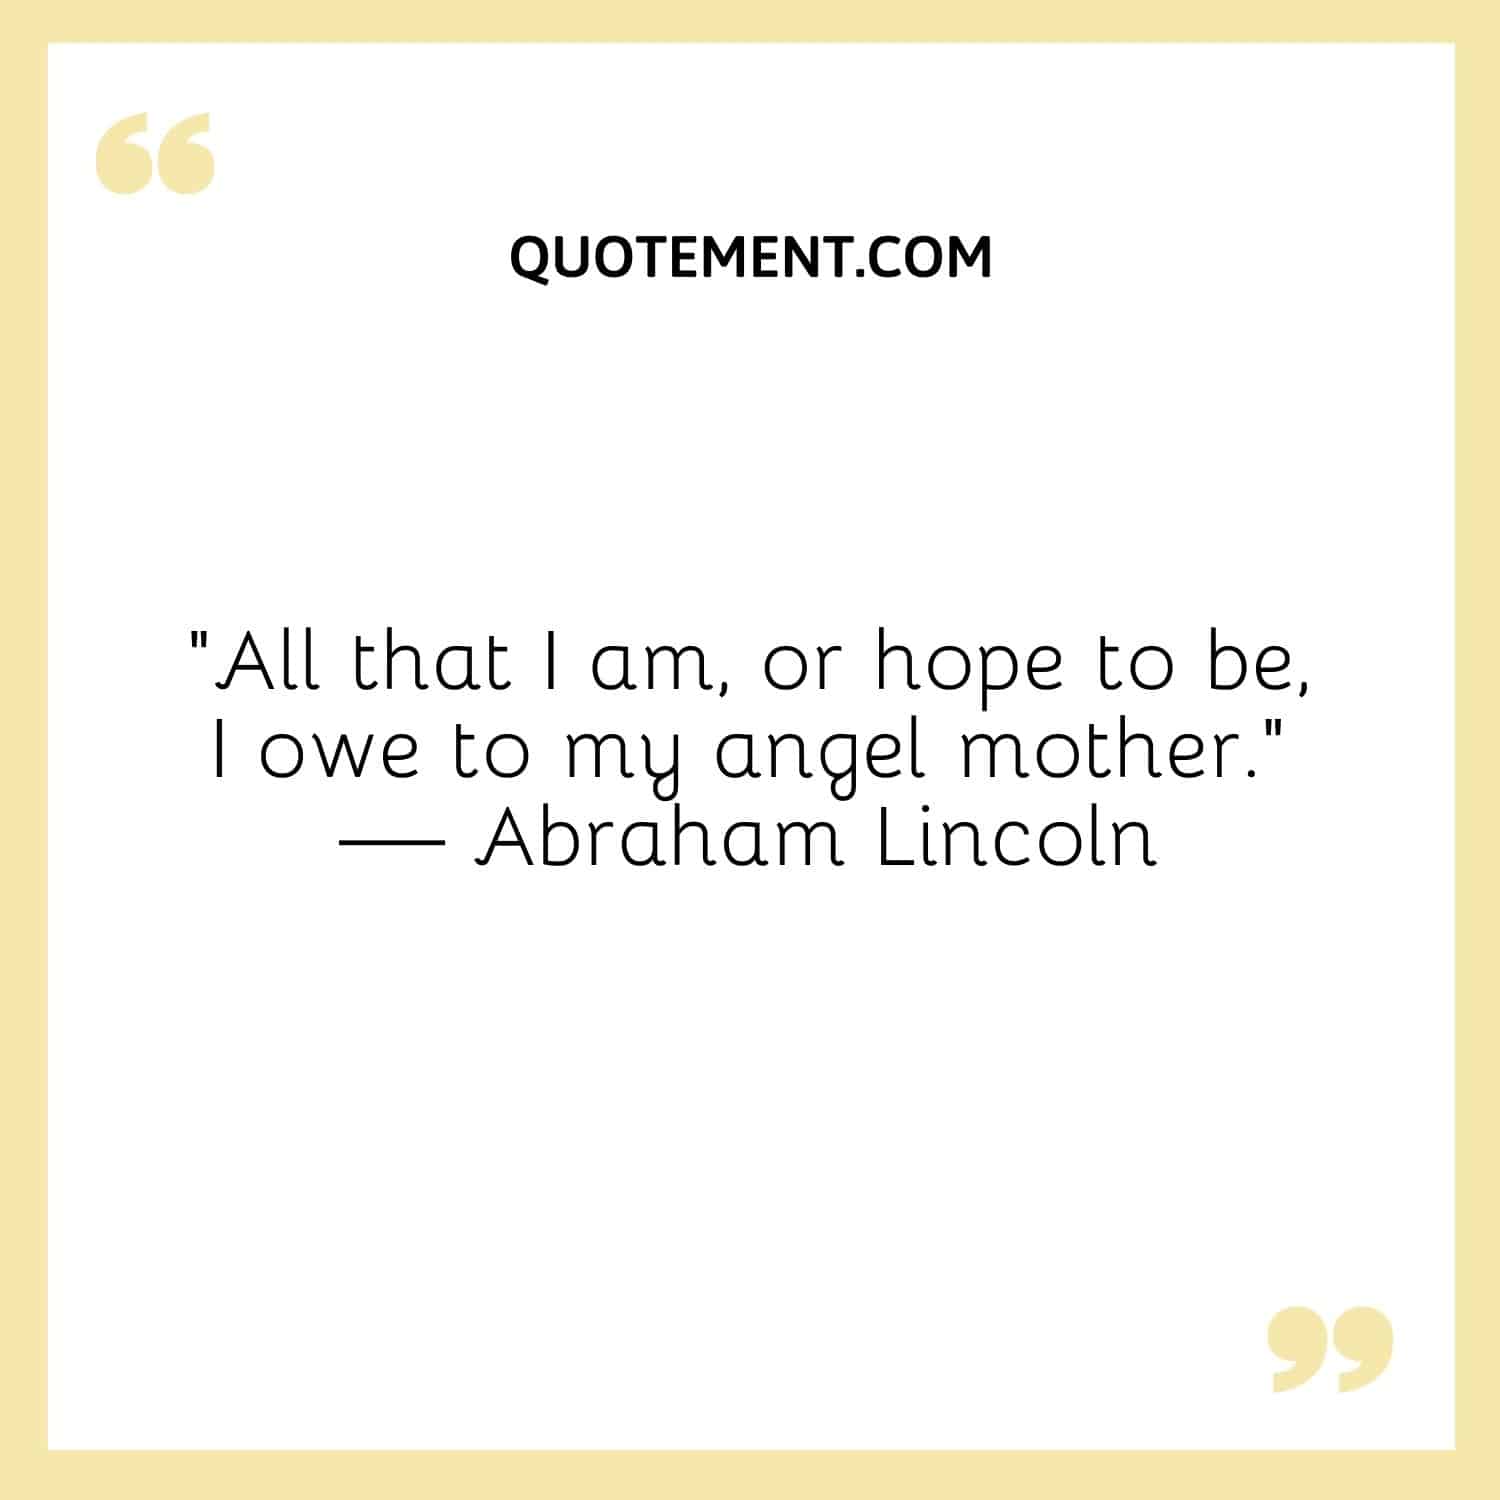 All that I am, or hope to be, I owe to my angel mother.